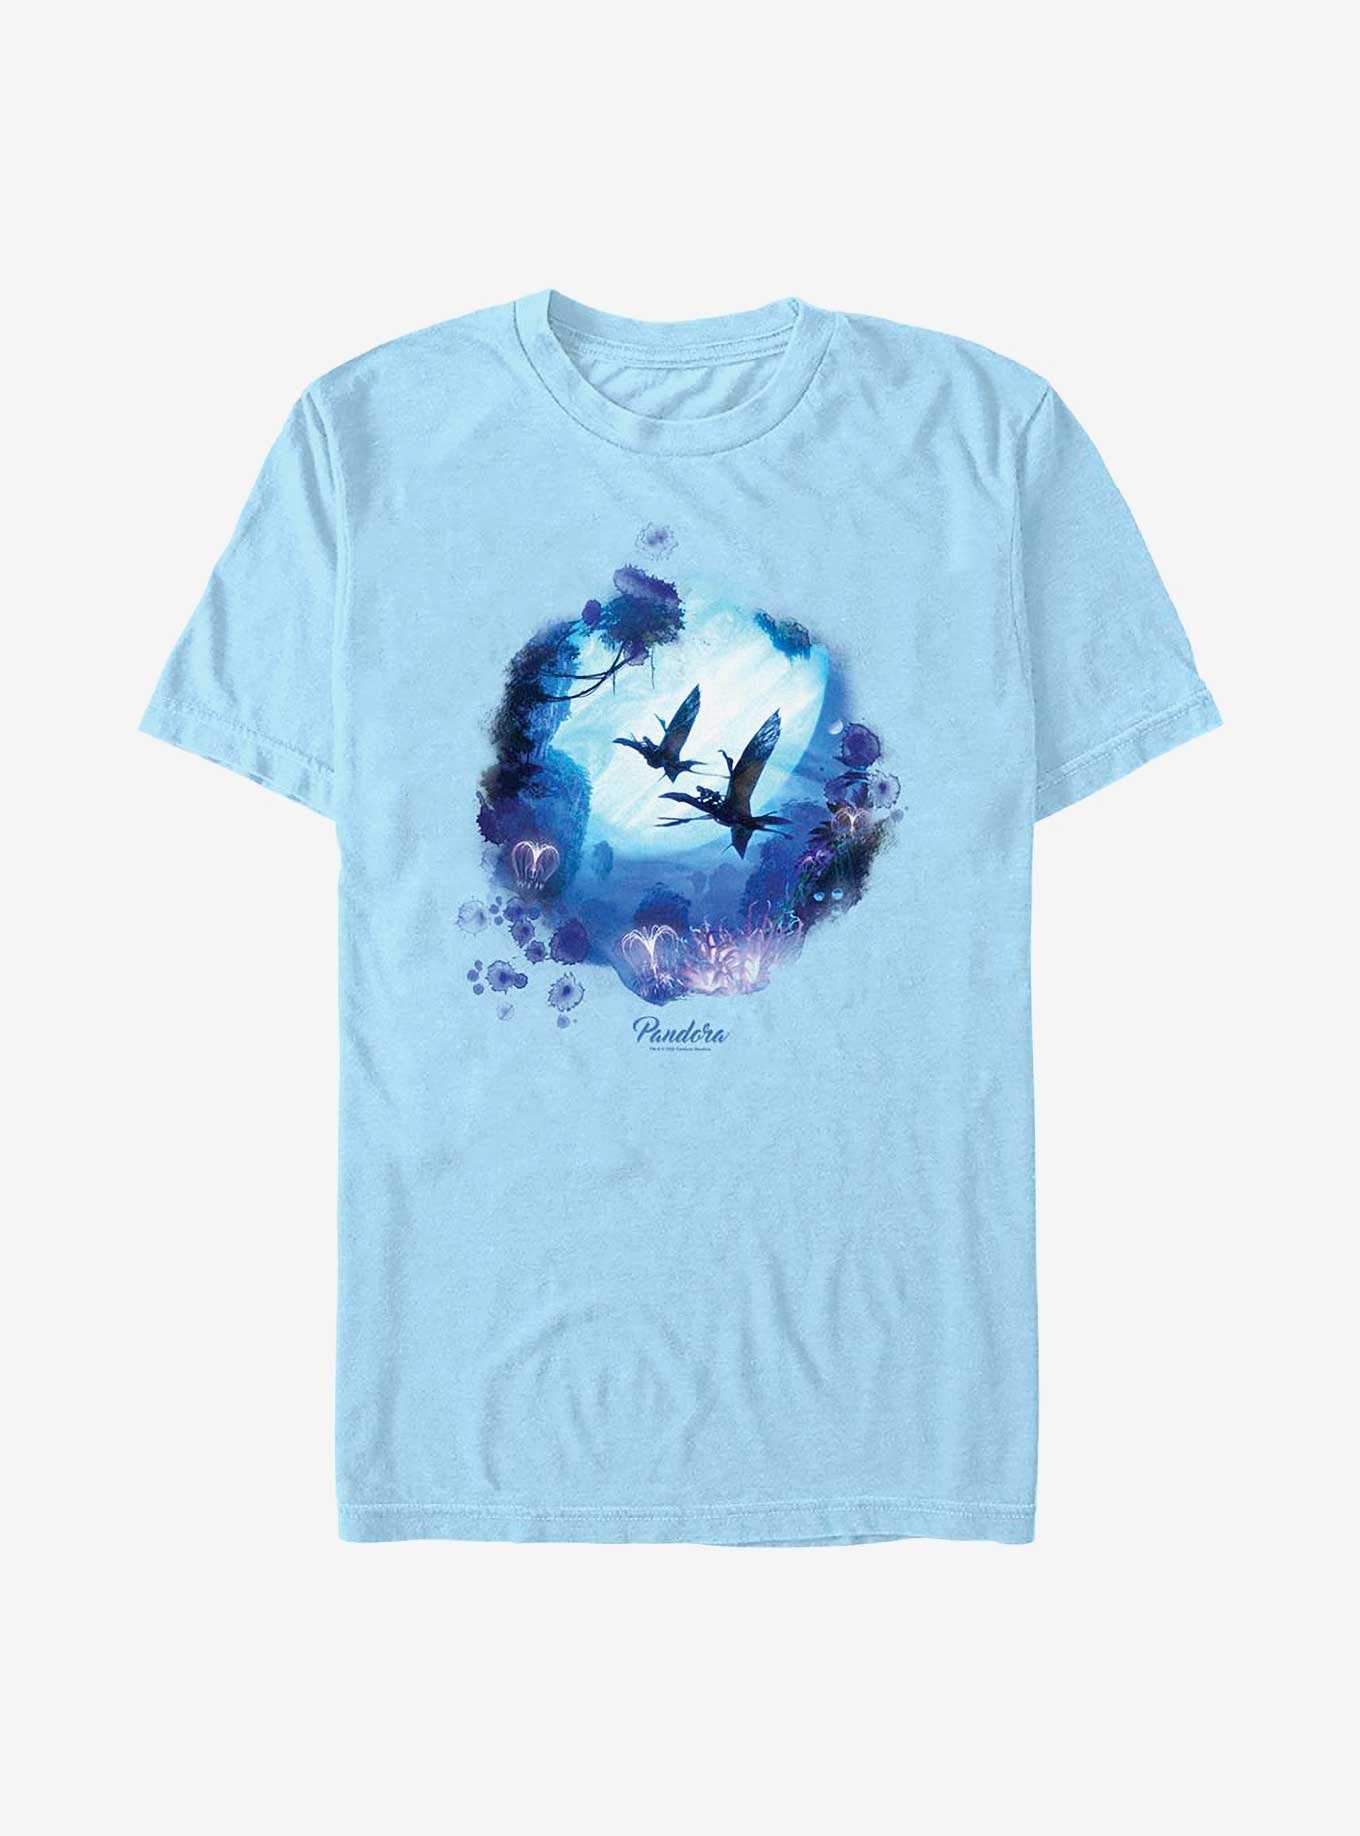 Avatar: The Way of Water Flying Banshee T-Shirt, , hi-res